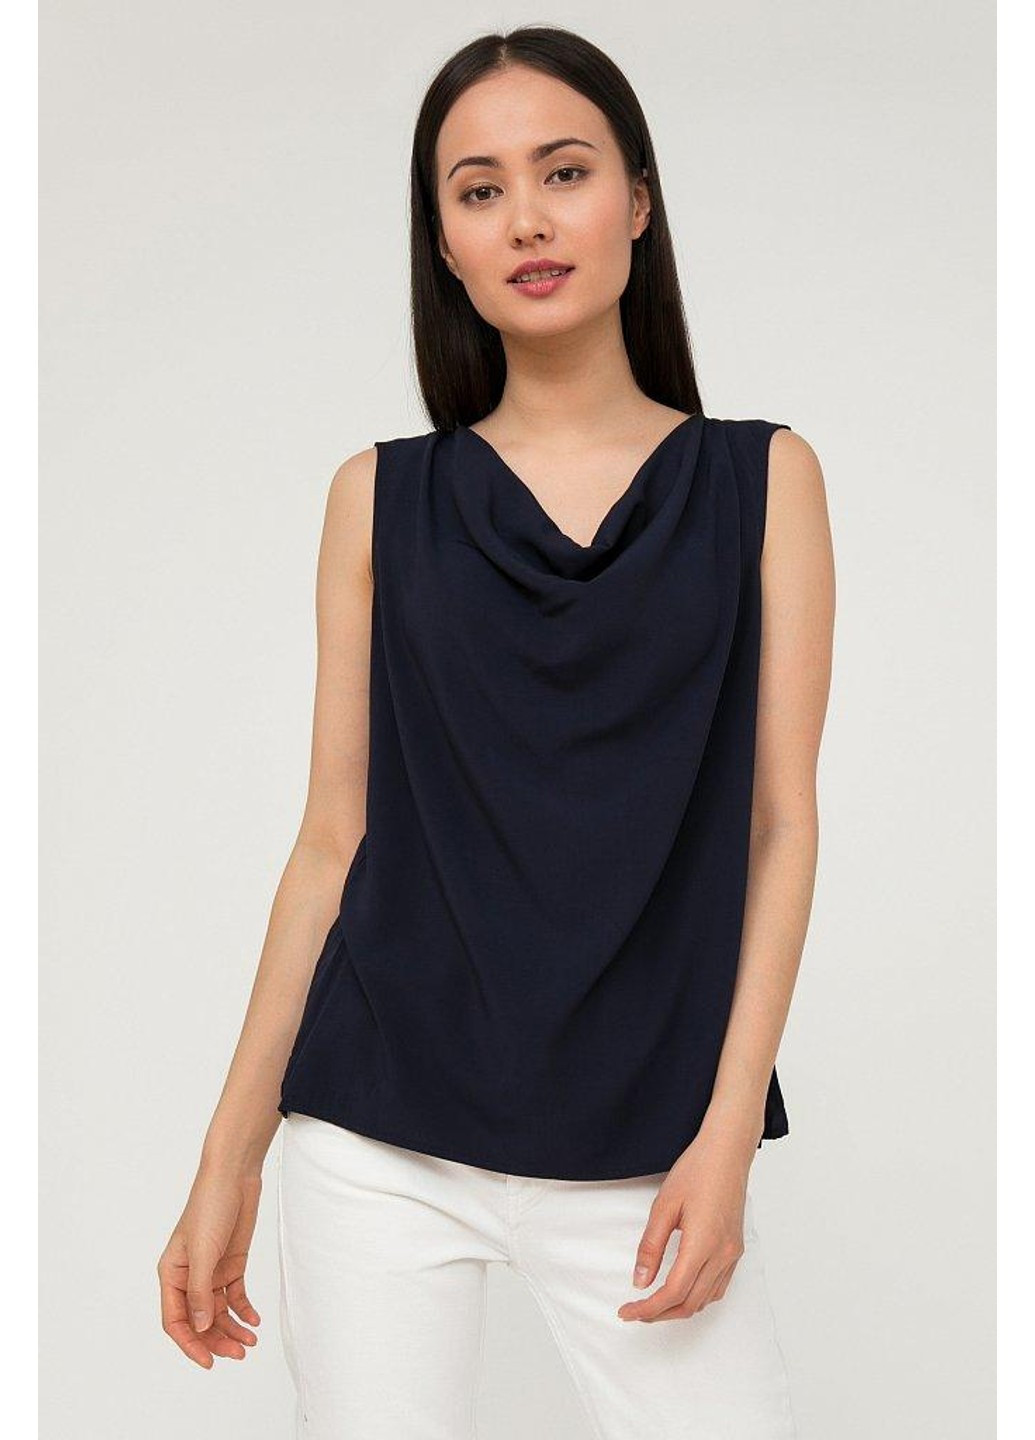 Темно-синяя летняя блуза s20-14015-101 Finn Flare